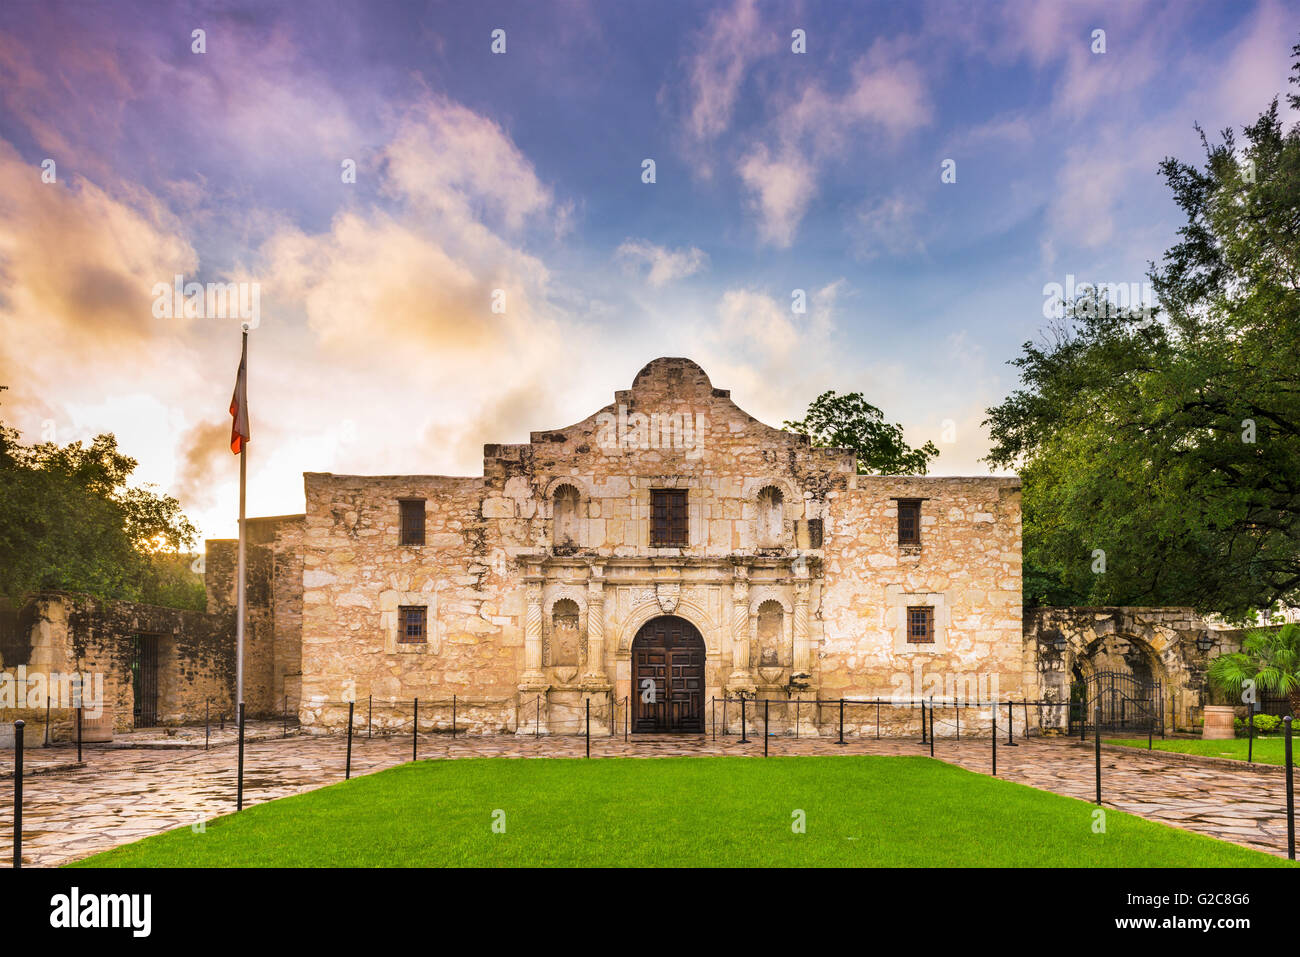 The Alamo in San Antonio, Texas, USA. Stock Photo